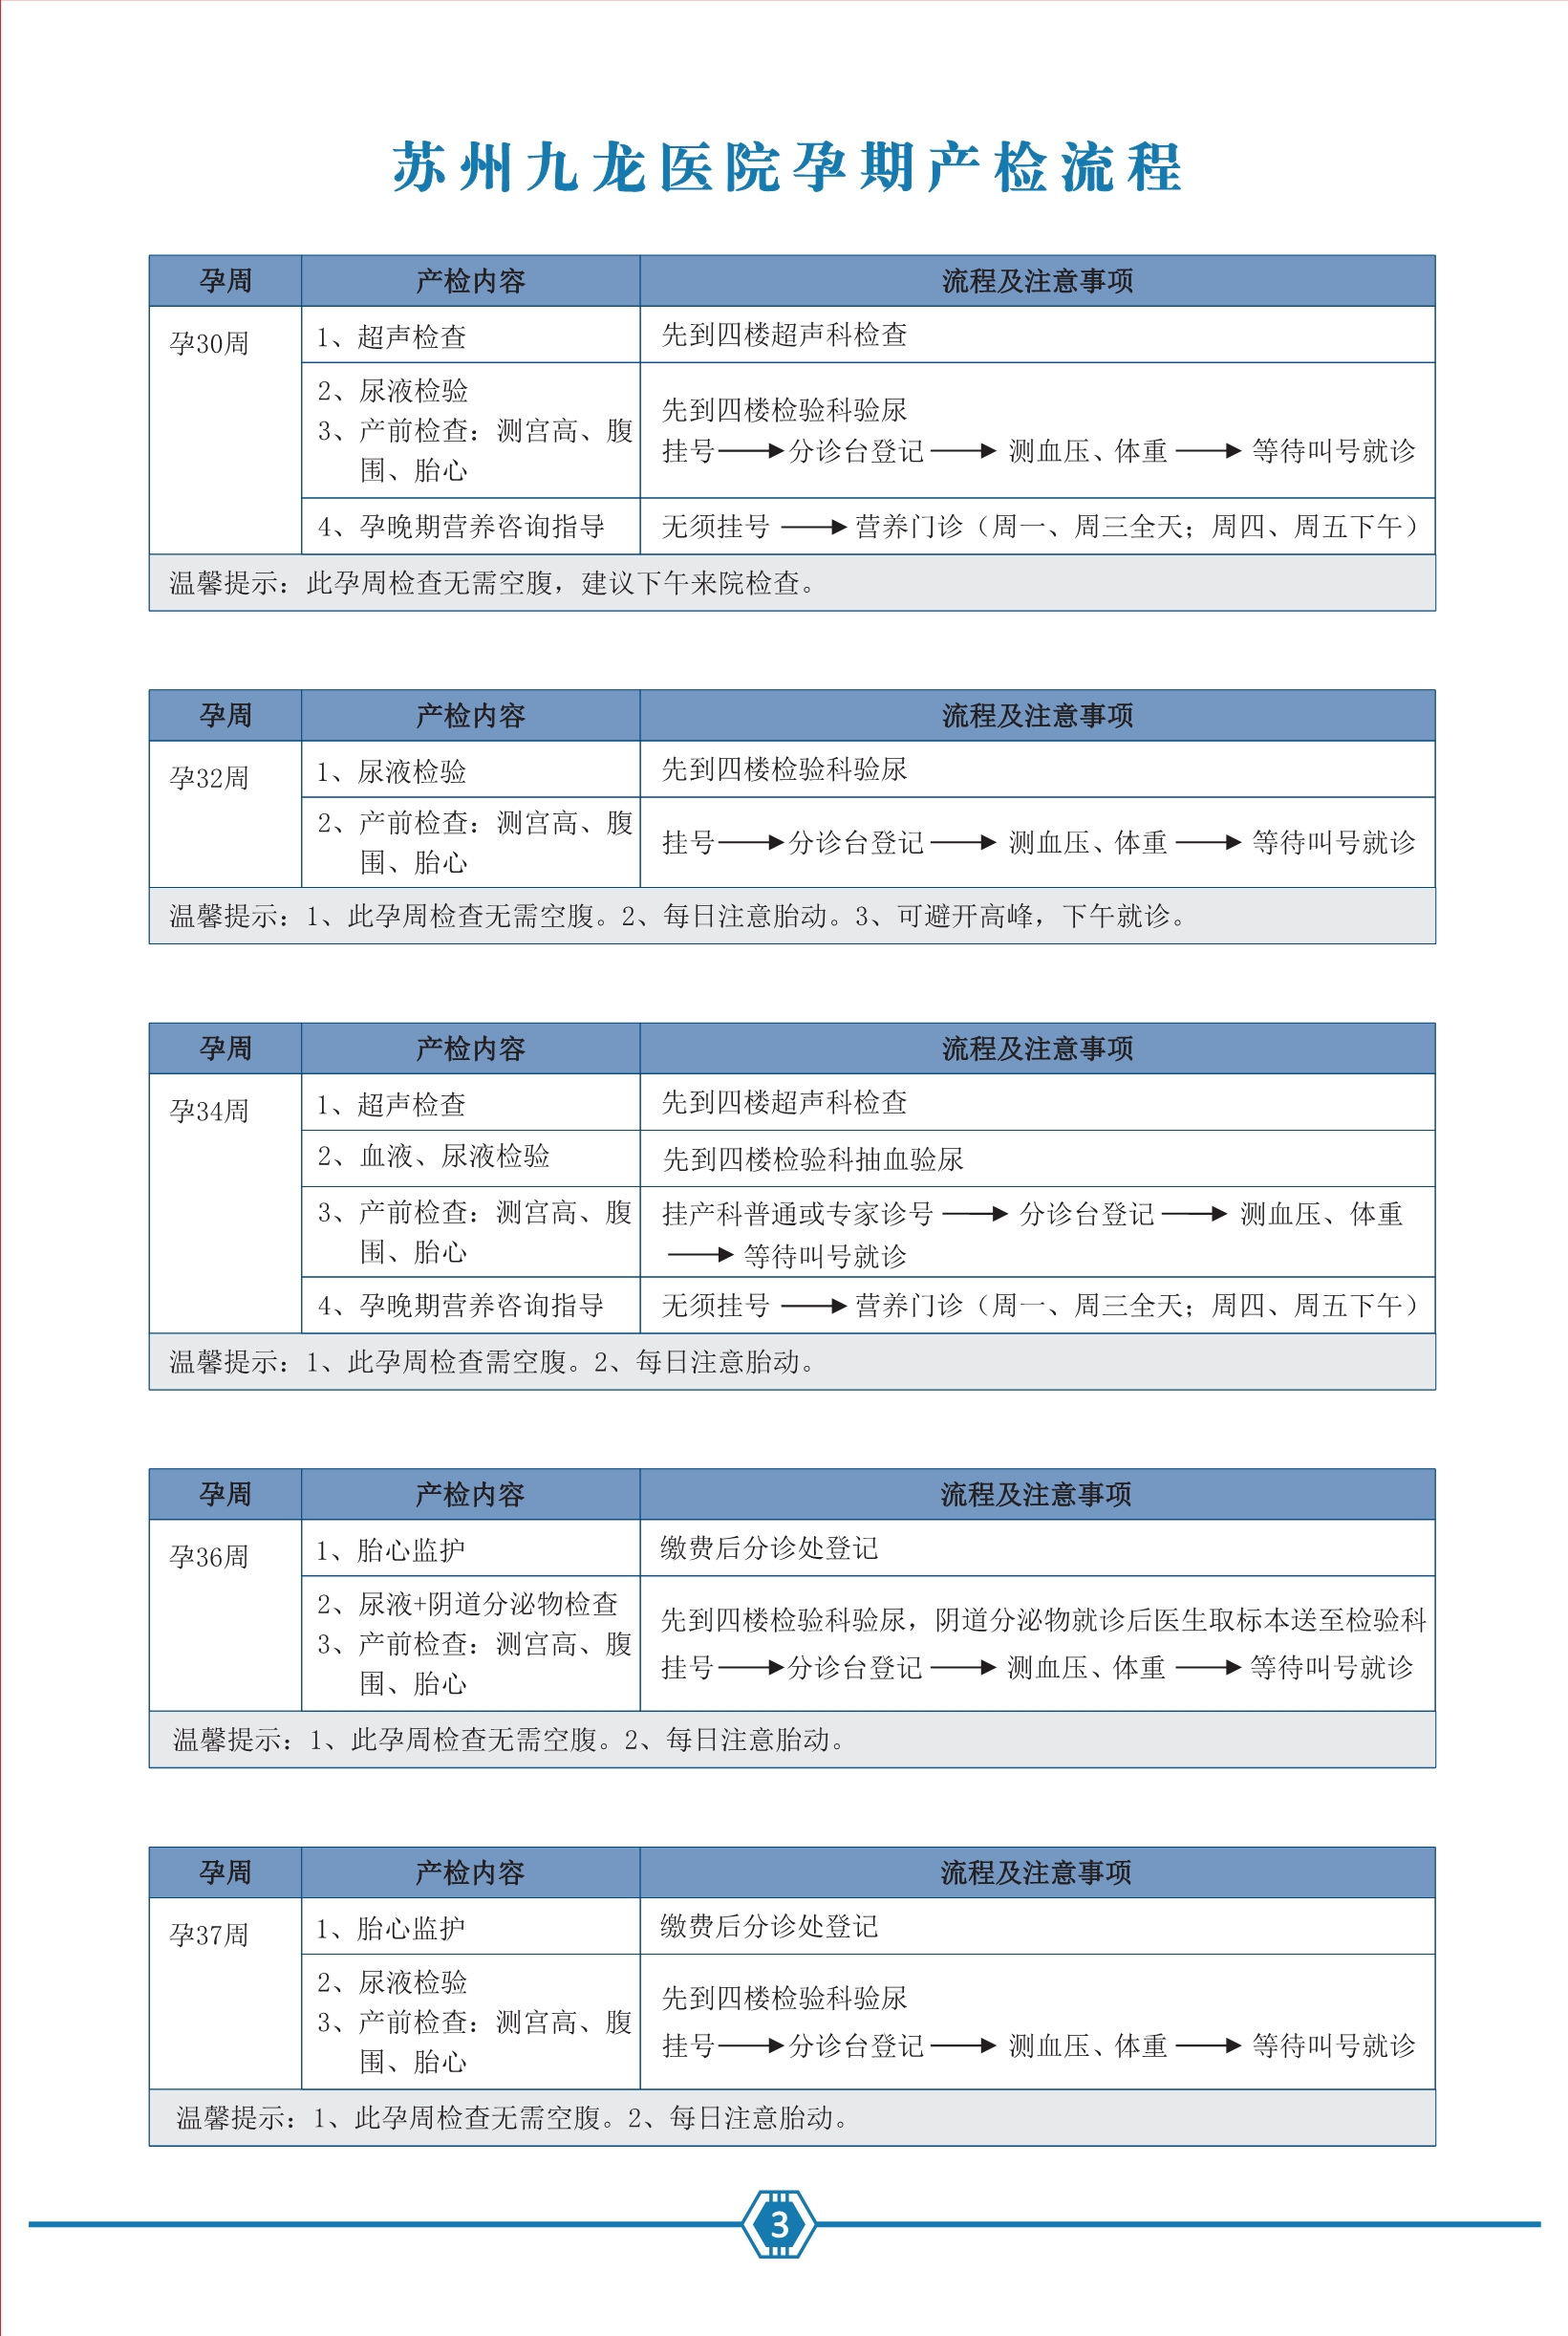 九龙医院产检专用手册2021.06.29--去框_4.jpg